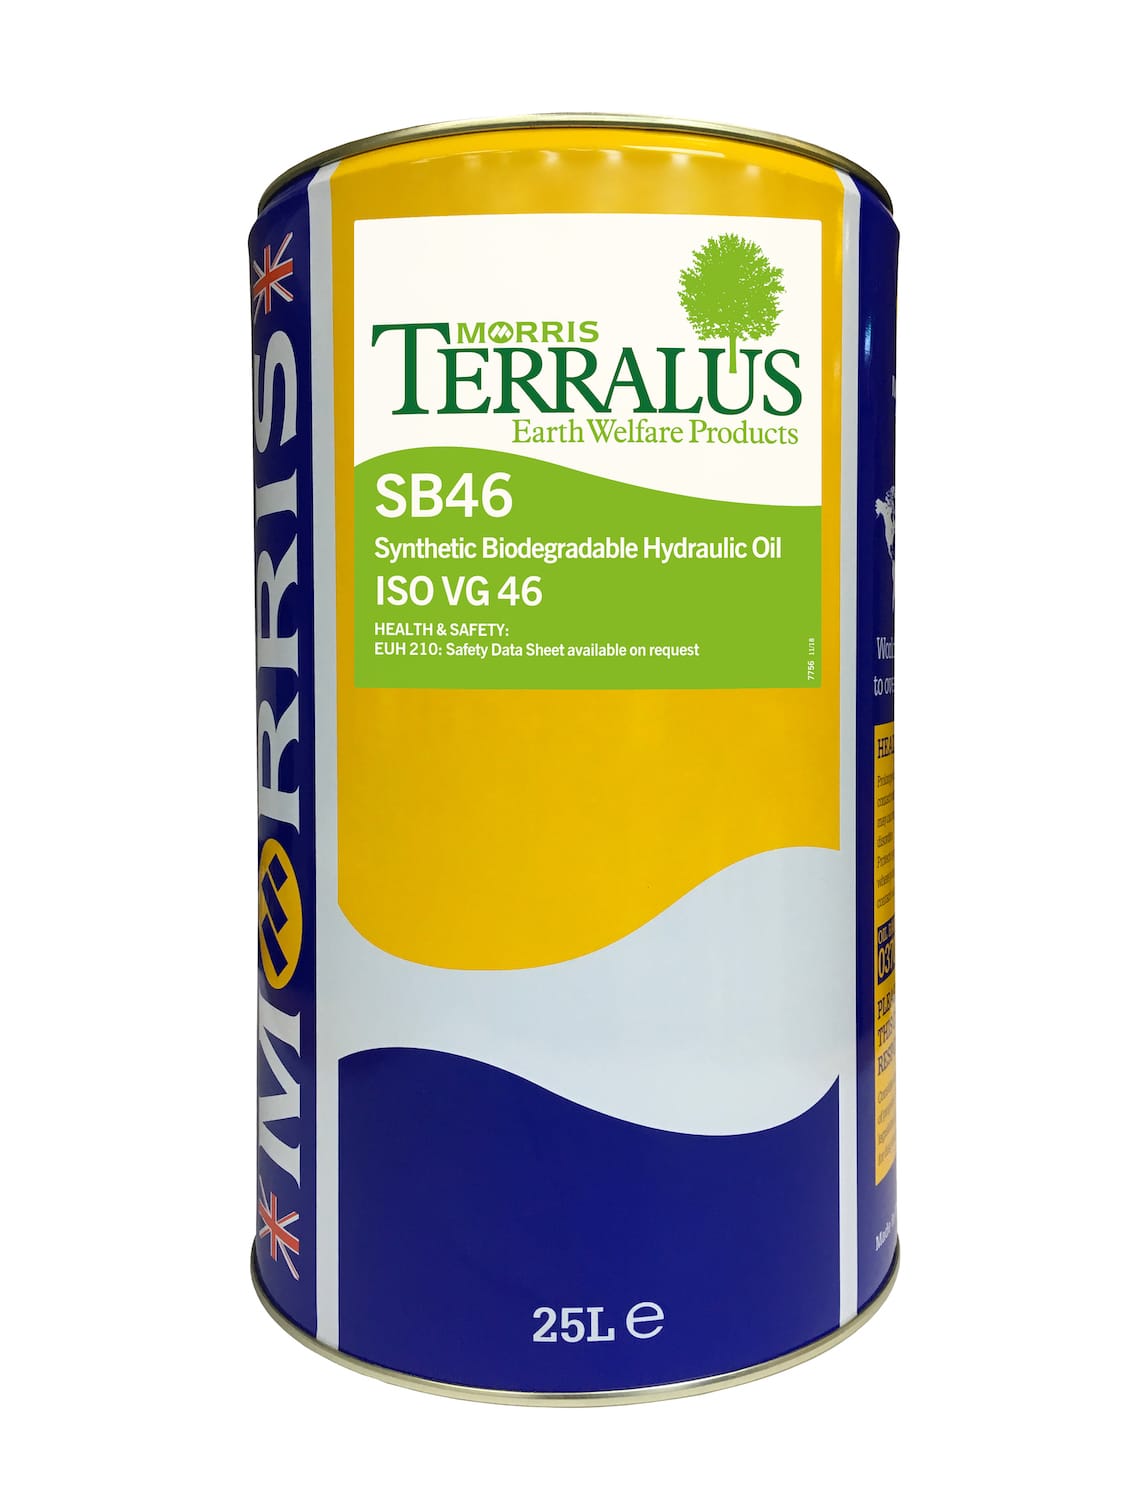 Terralus SB46